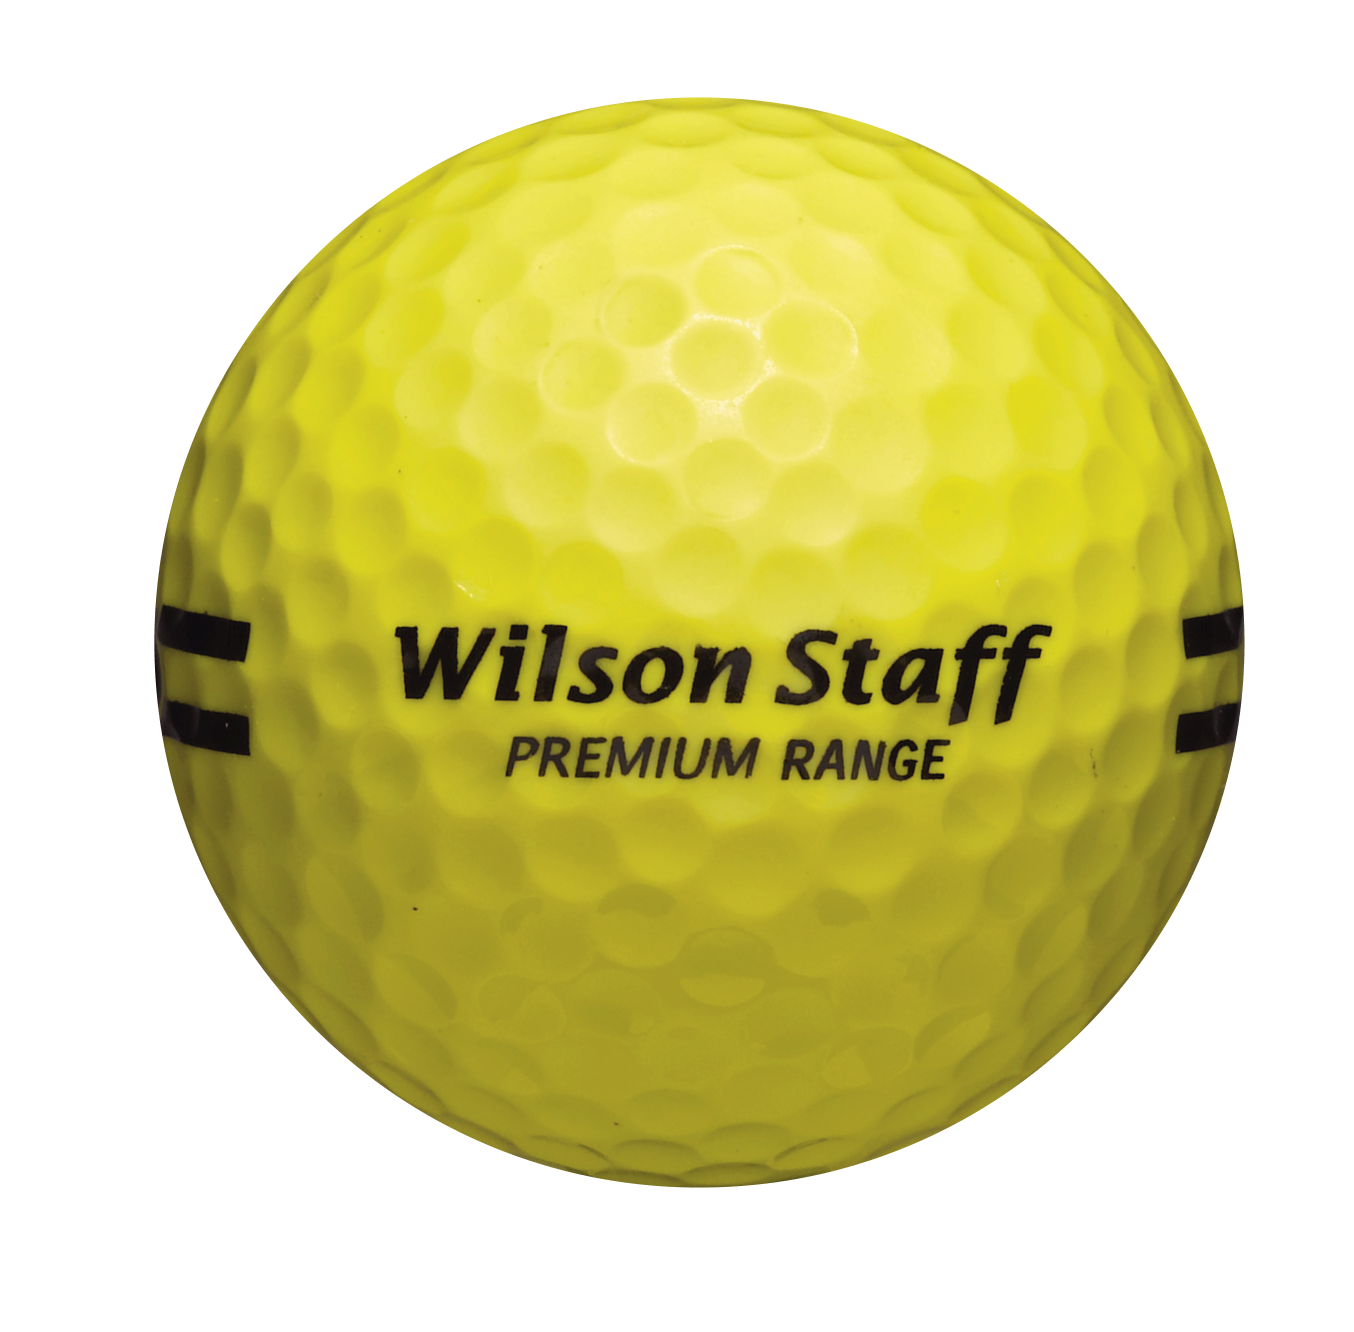 Wilson Staff Balles de practice jaune